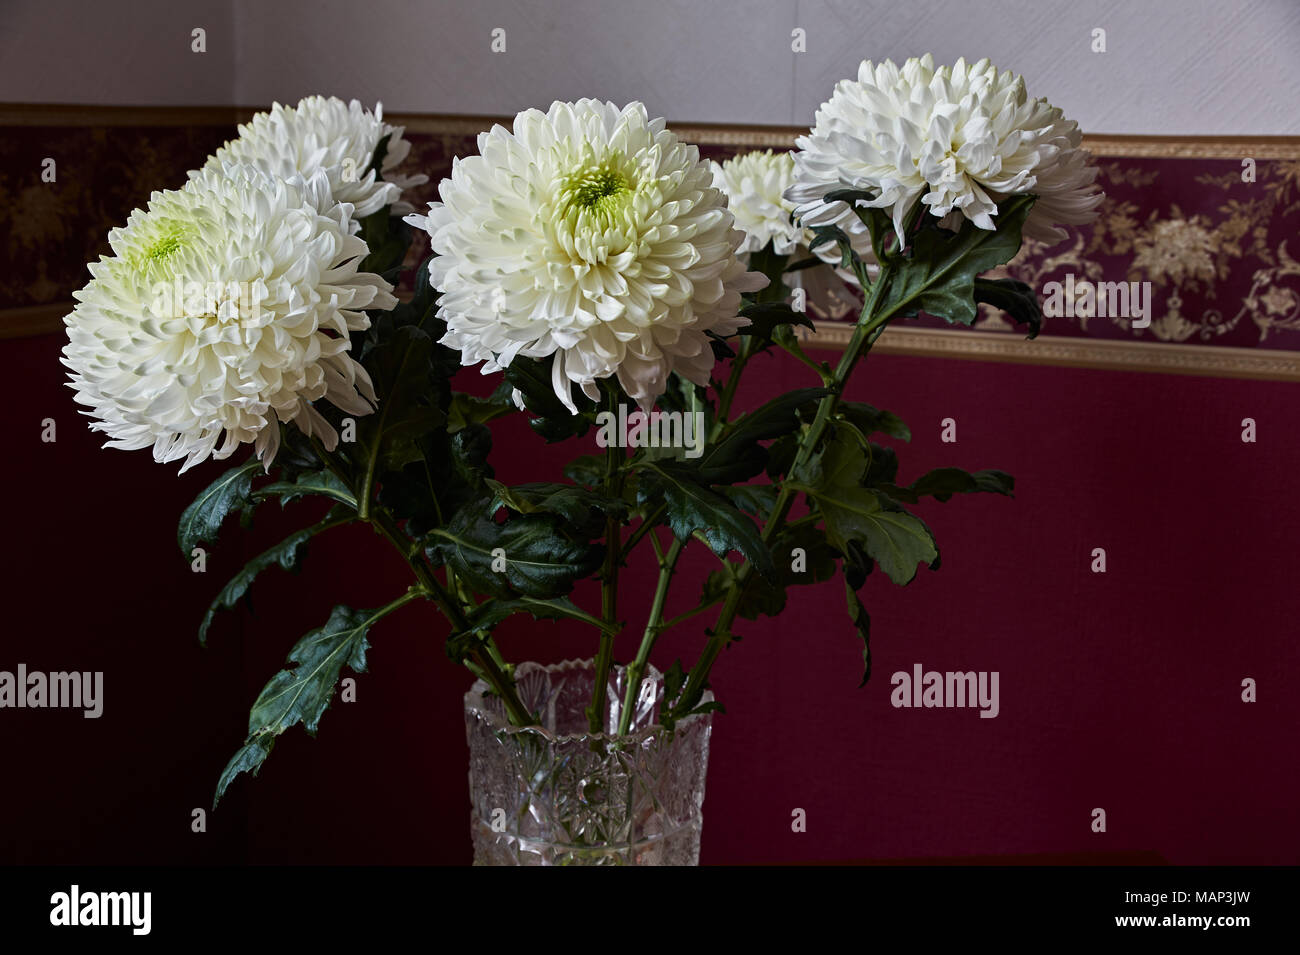 Weiße Chrysanthemen von sphärischen Form mit grüner Kern in einem Kristall Vase stand auf einem Tisch. Russland, Moskau, Urlaub, Geschenk, Stimmung, Natur, Blume, Stockfoto